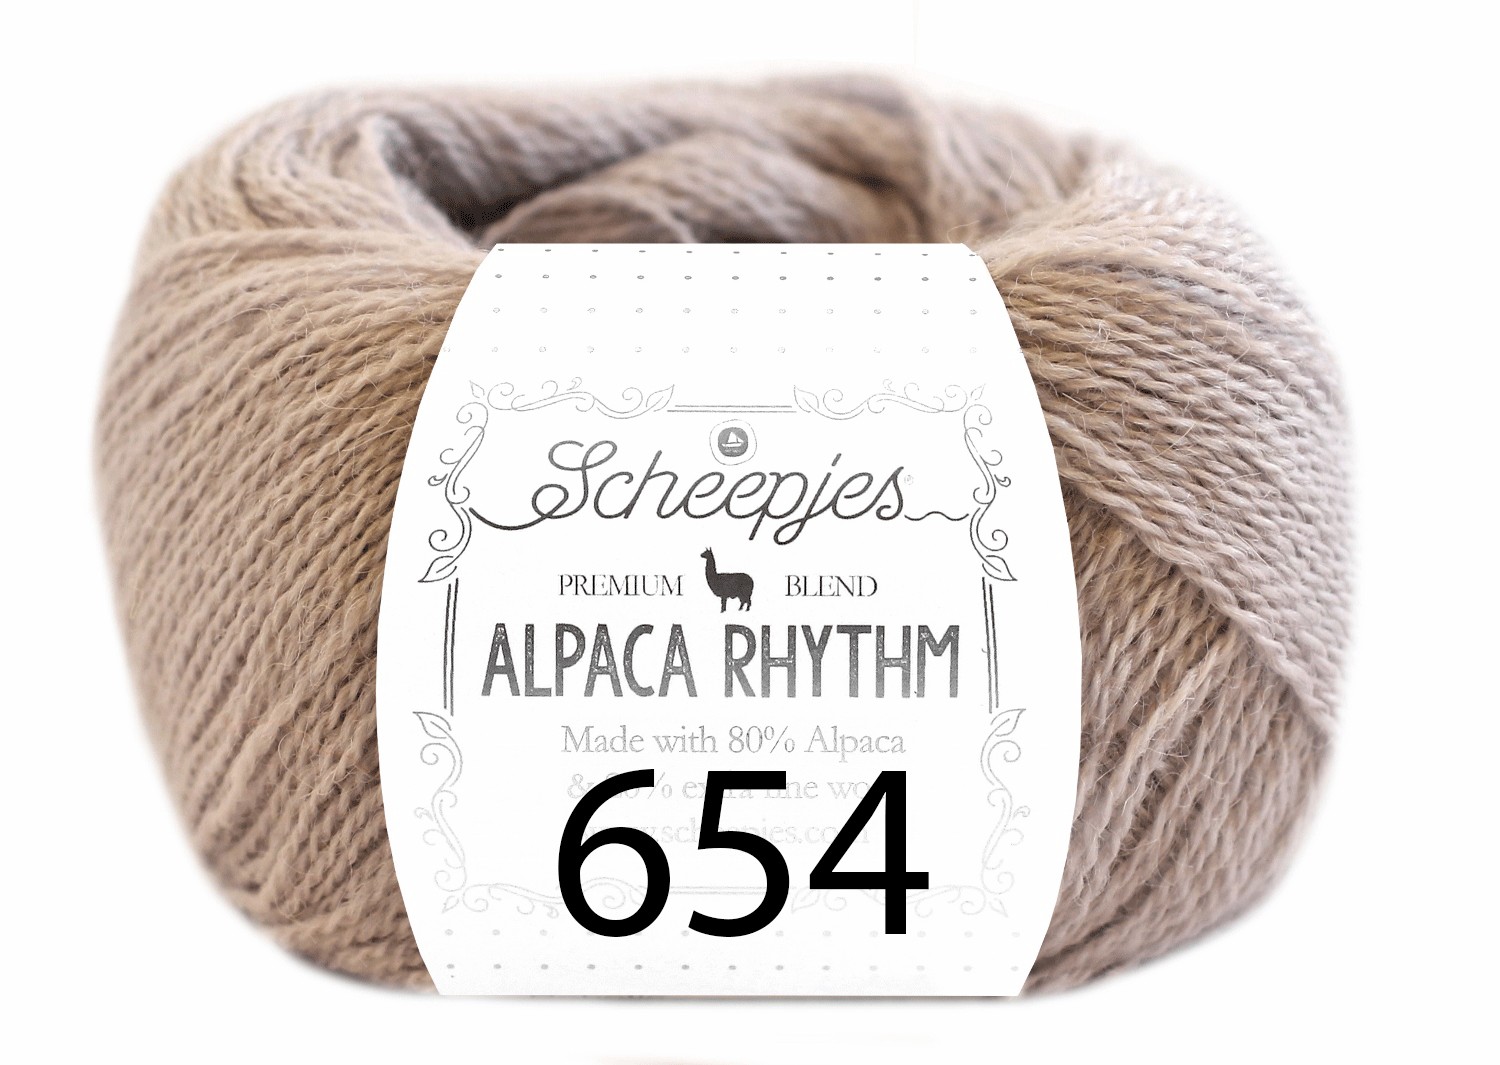 Scheepjes- Alpaca Rhythm 654 Robotic